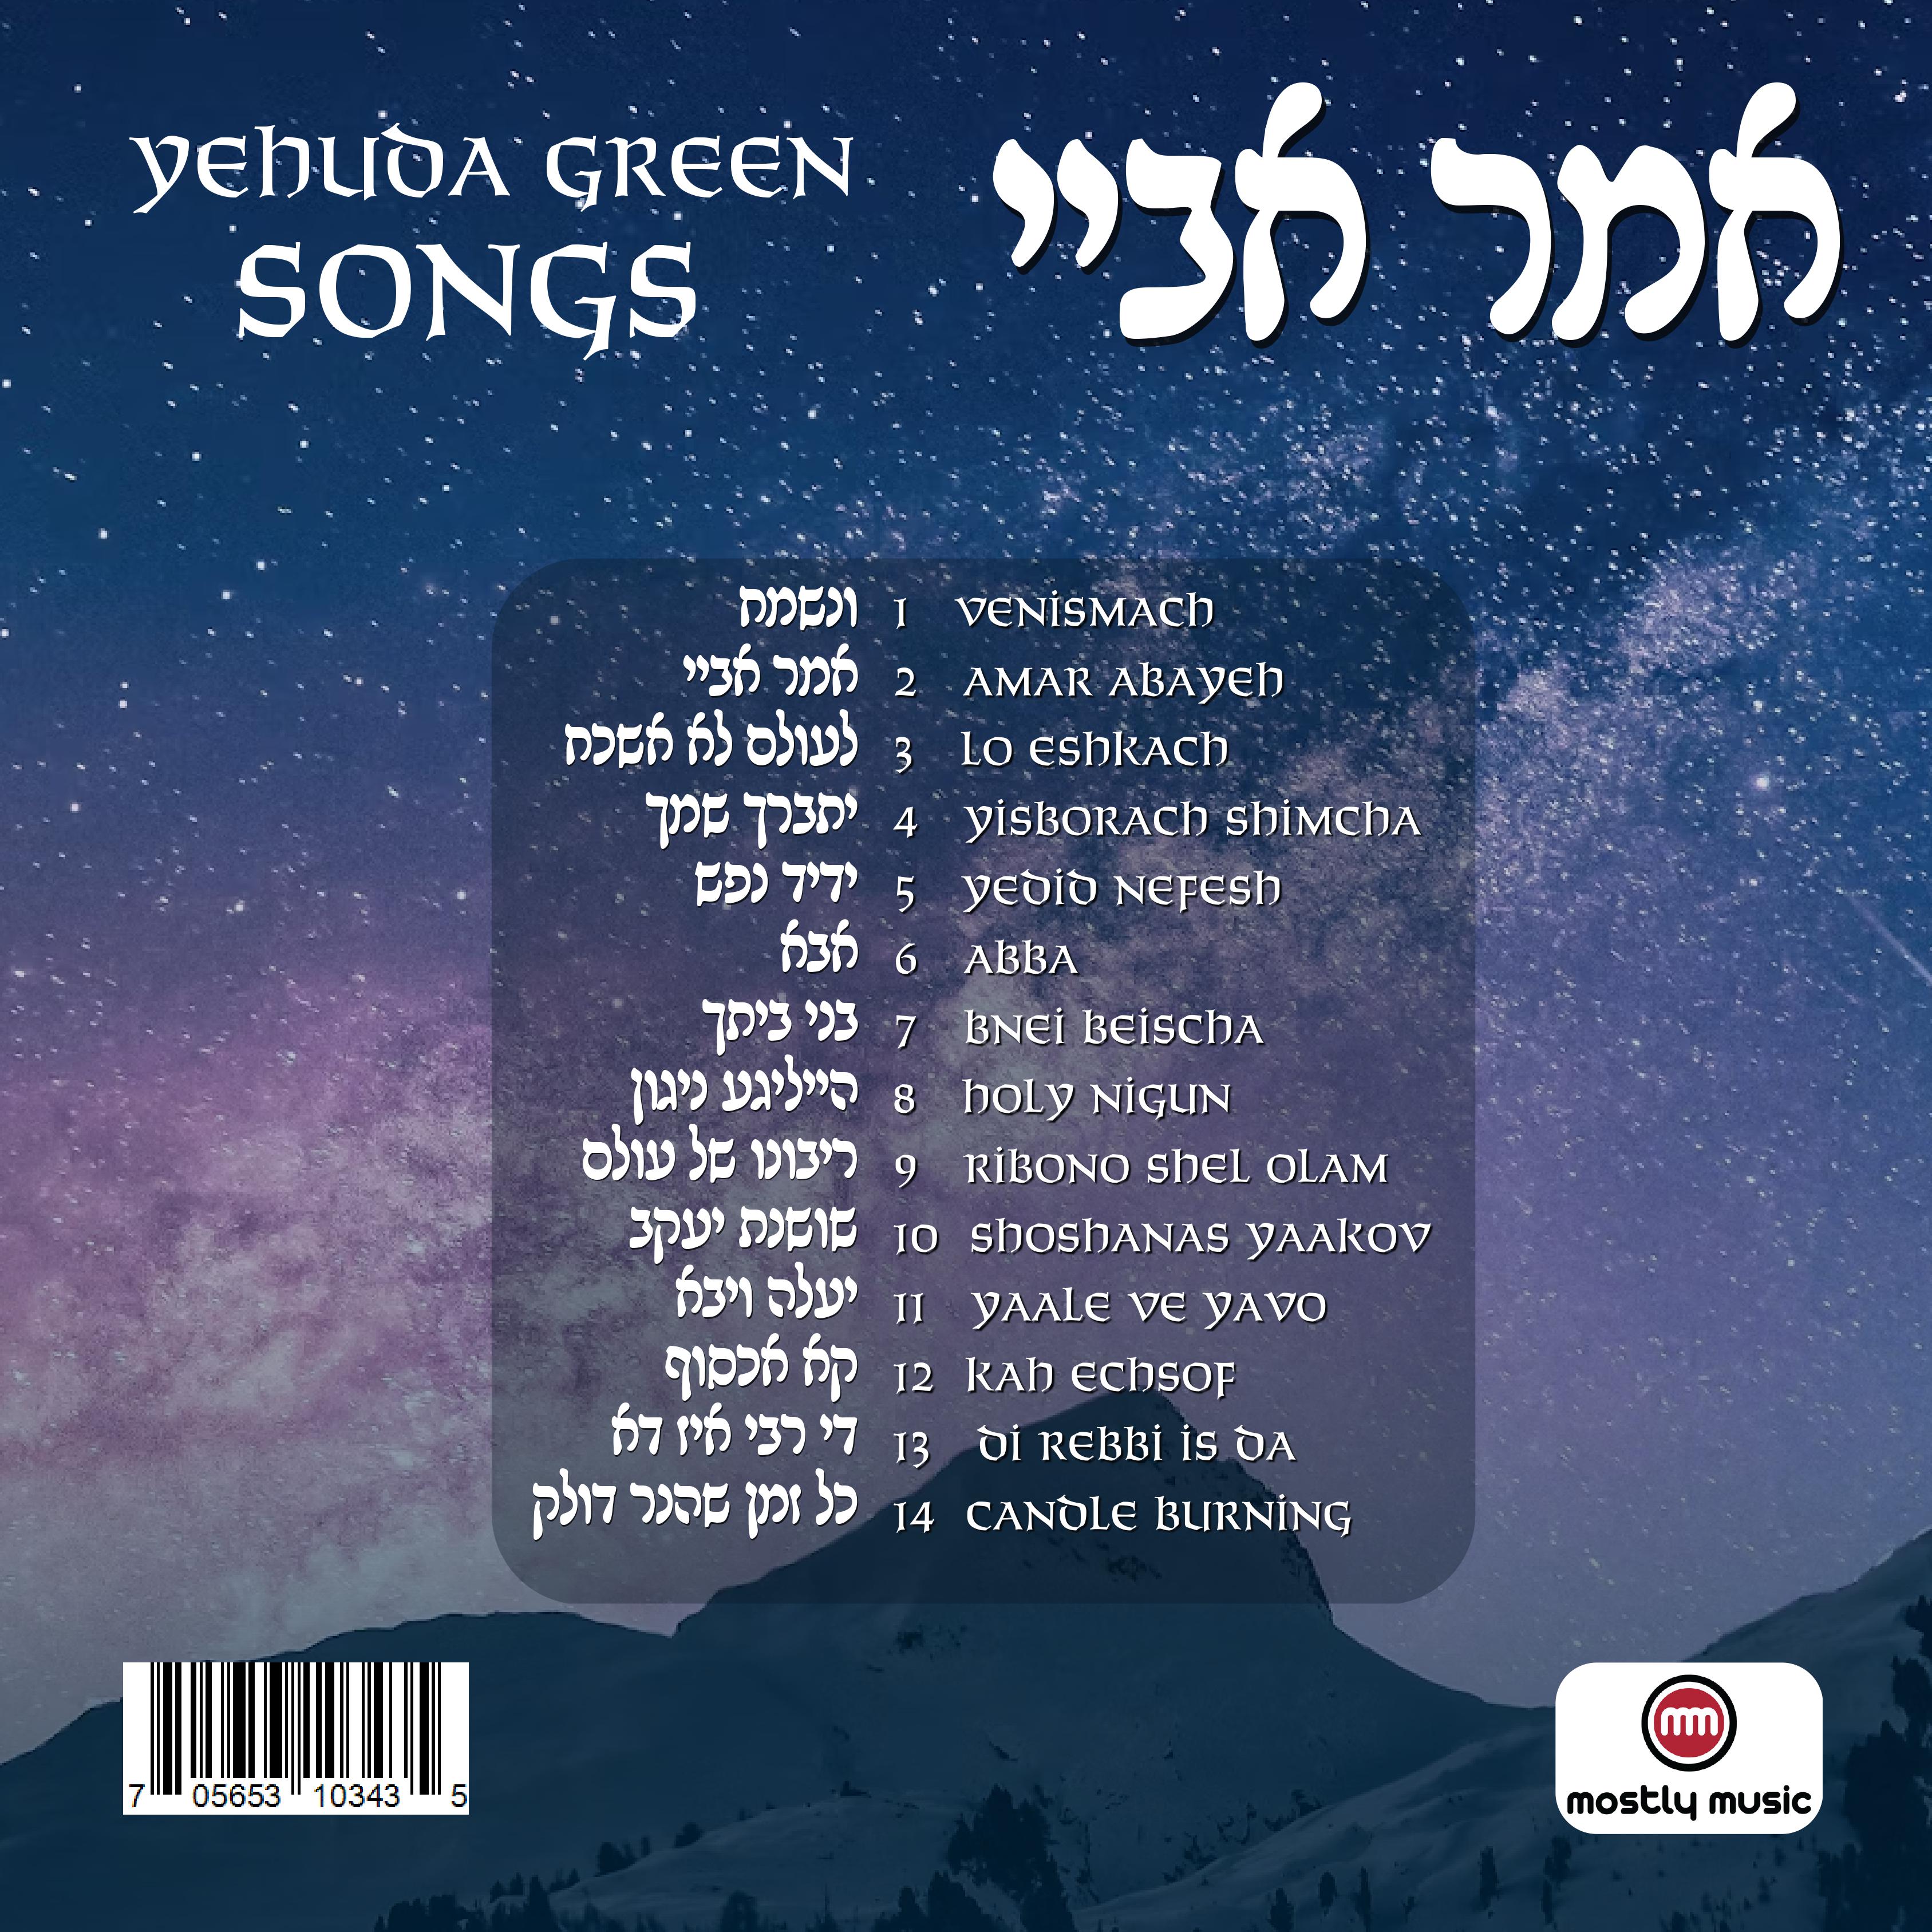 Yehuda Green - Amar Abayeh